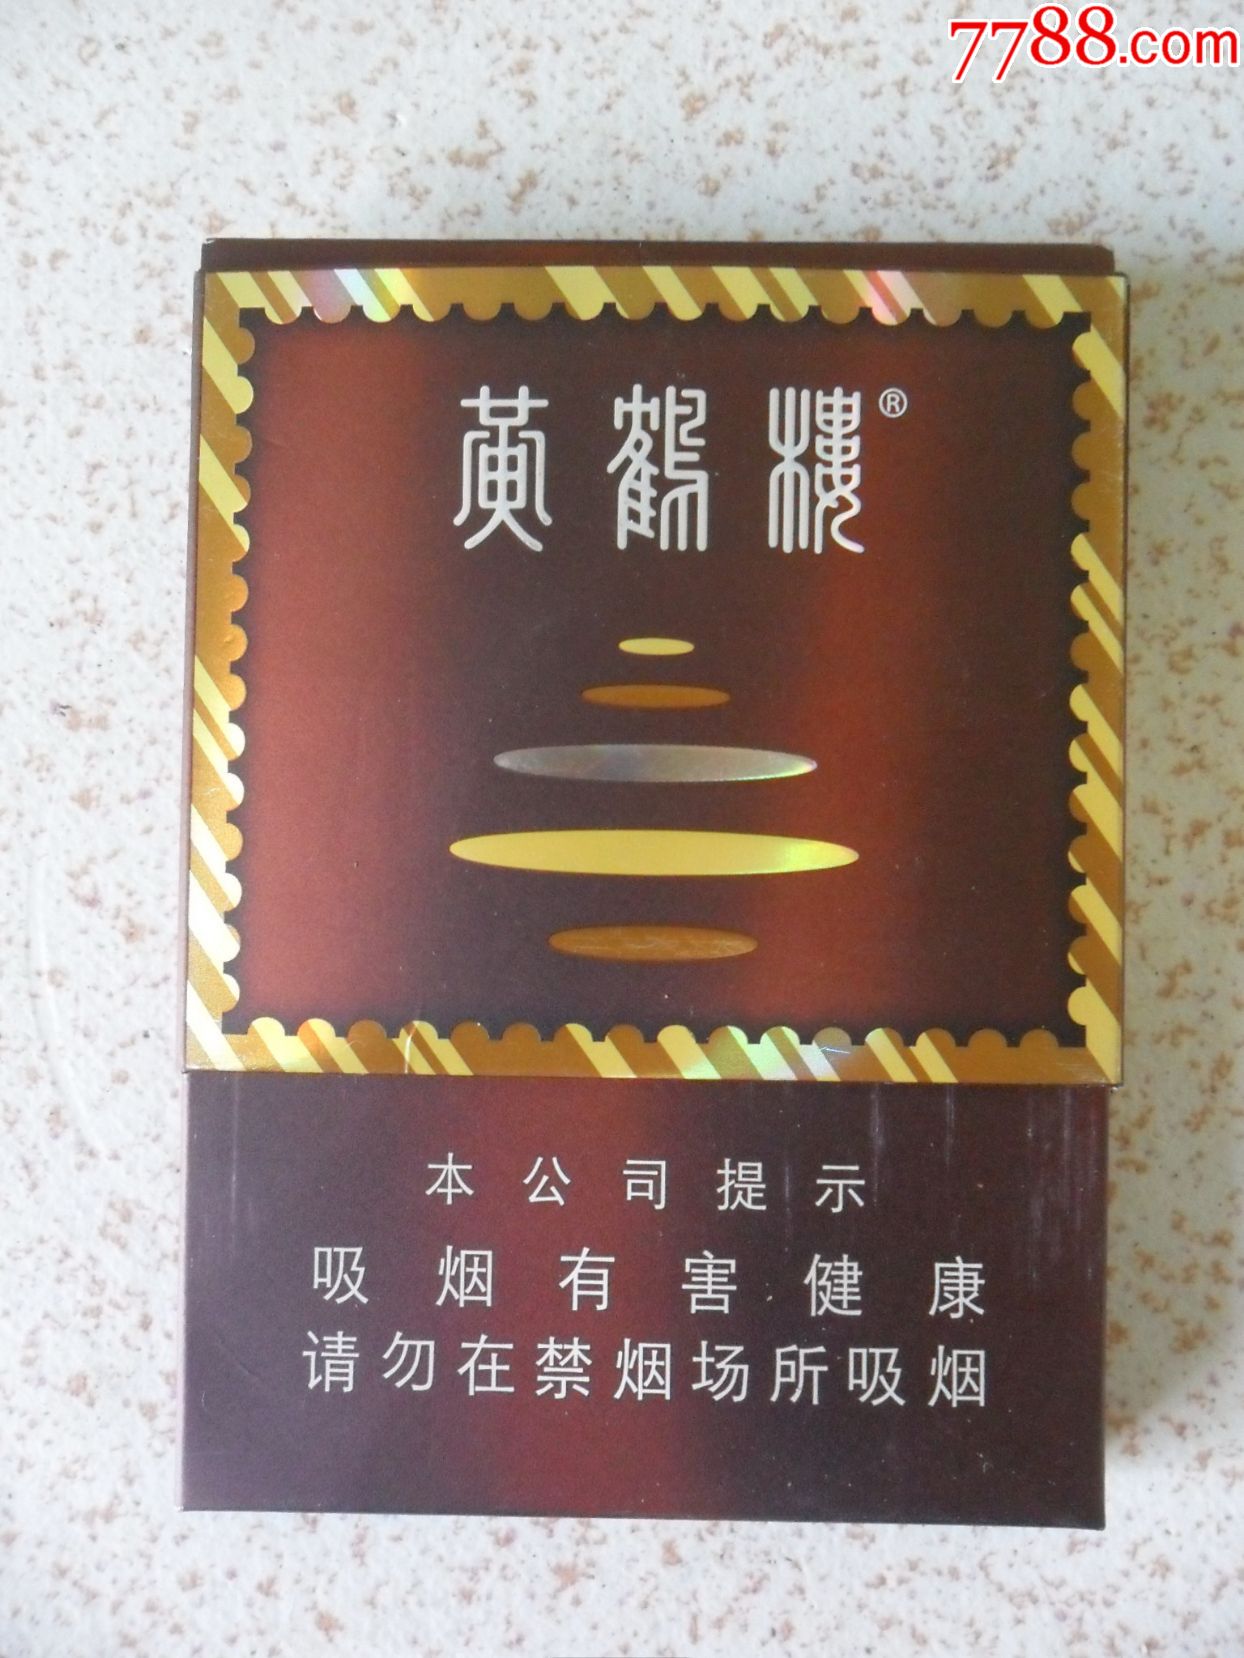 黄鹤楼8mg软盒香烟图片